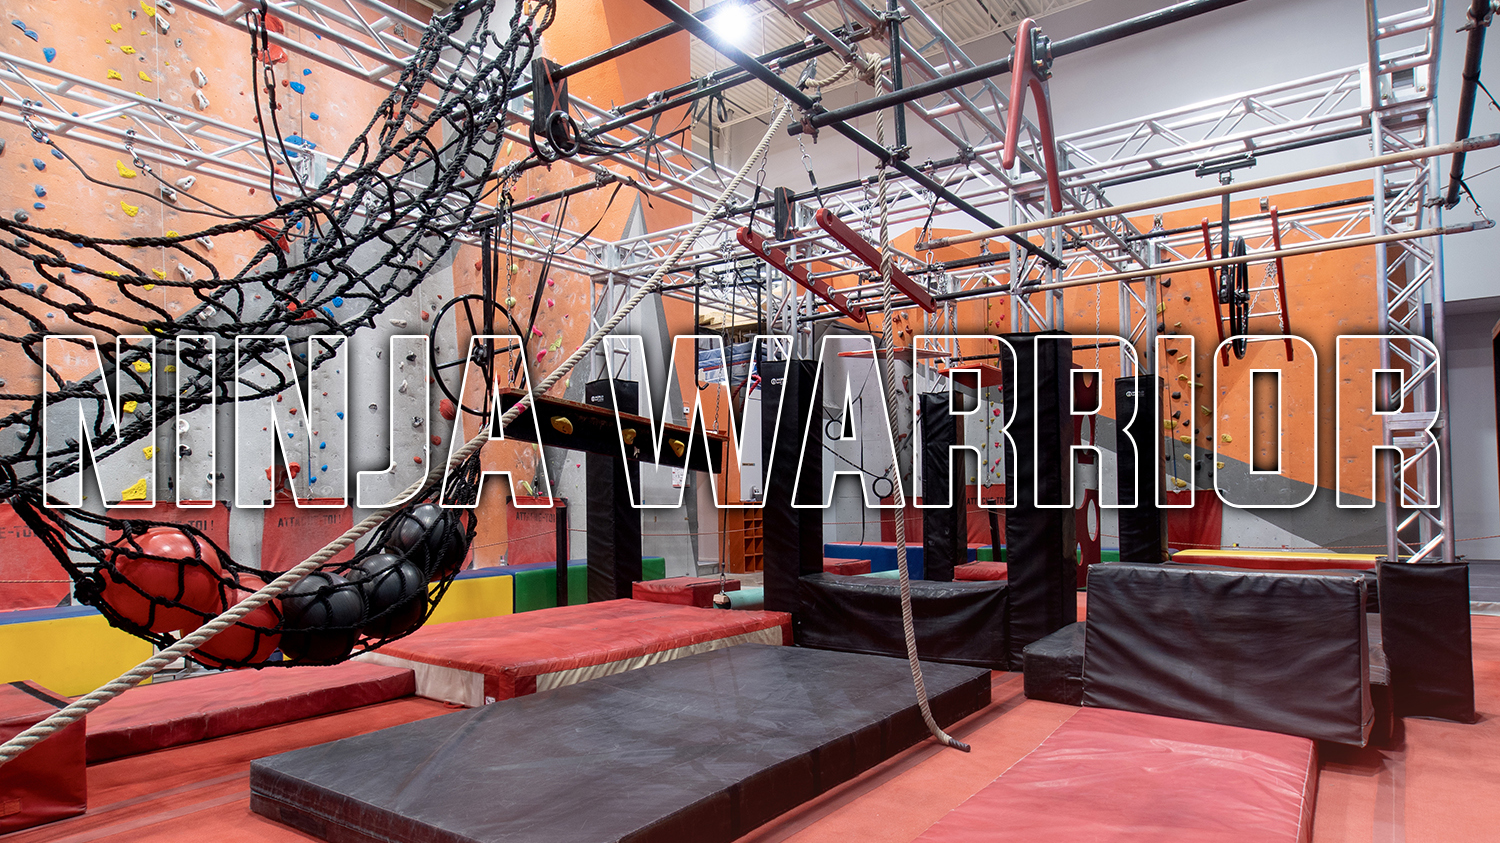 Course d'obstacles – Un parcours de Ninja Warrior est installé